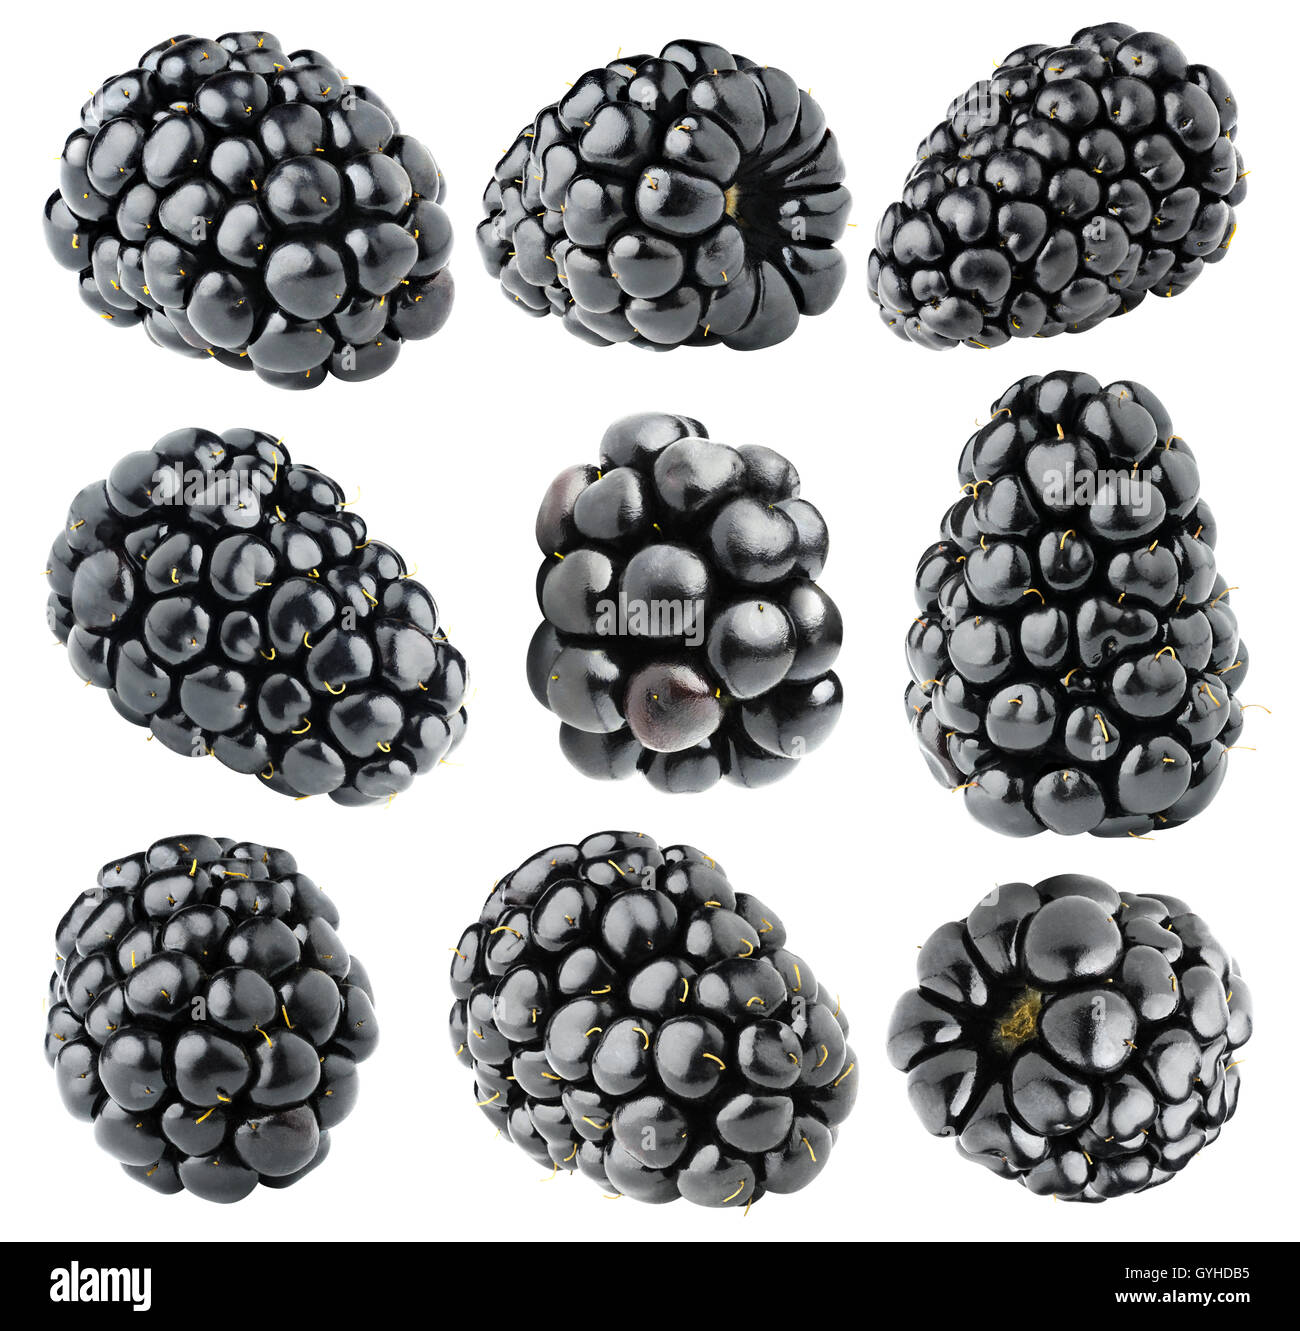 Les mûres isolées. Collection de divers fruits blackberry isolé sur fond blanc avec clipping path Banque D'Images